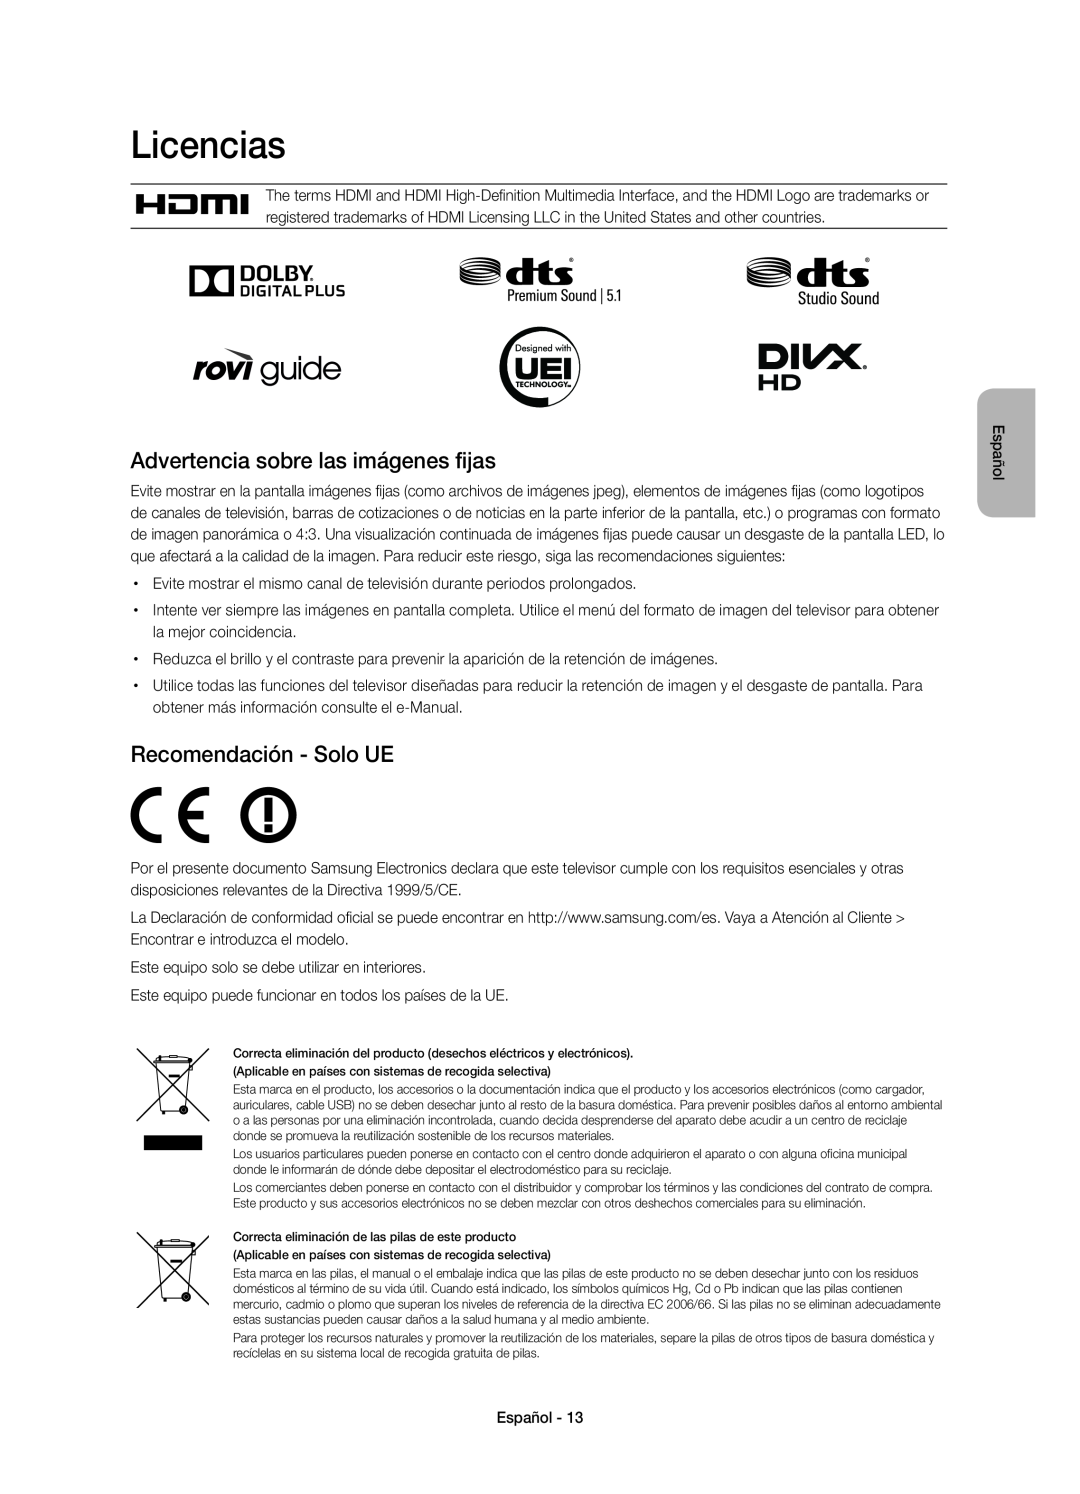 Samsung UE75H6400AWXXH, UE48H6400AWXXH Licencias, Advertencia sobre las imágenes fijas, Recomendación - Solo UE, Español 